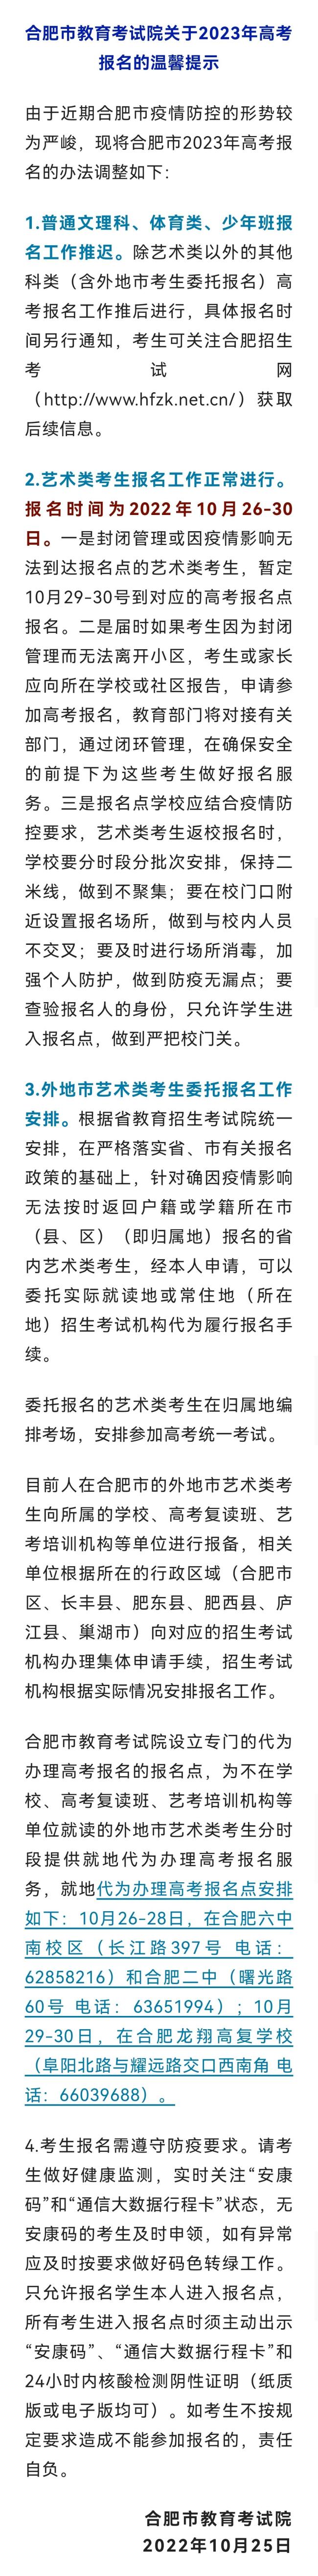 上海昨日新增10+3，其中1例在风险人群筛查中发现 - World Cup News - Peraplay Gaming 百度热点快讯